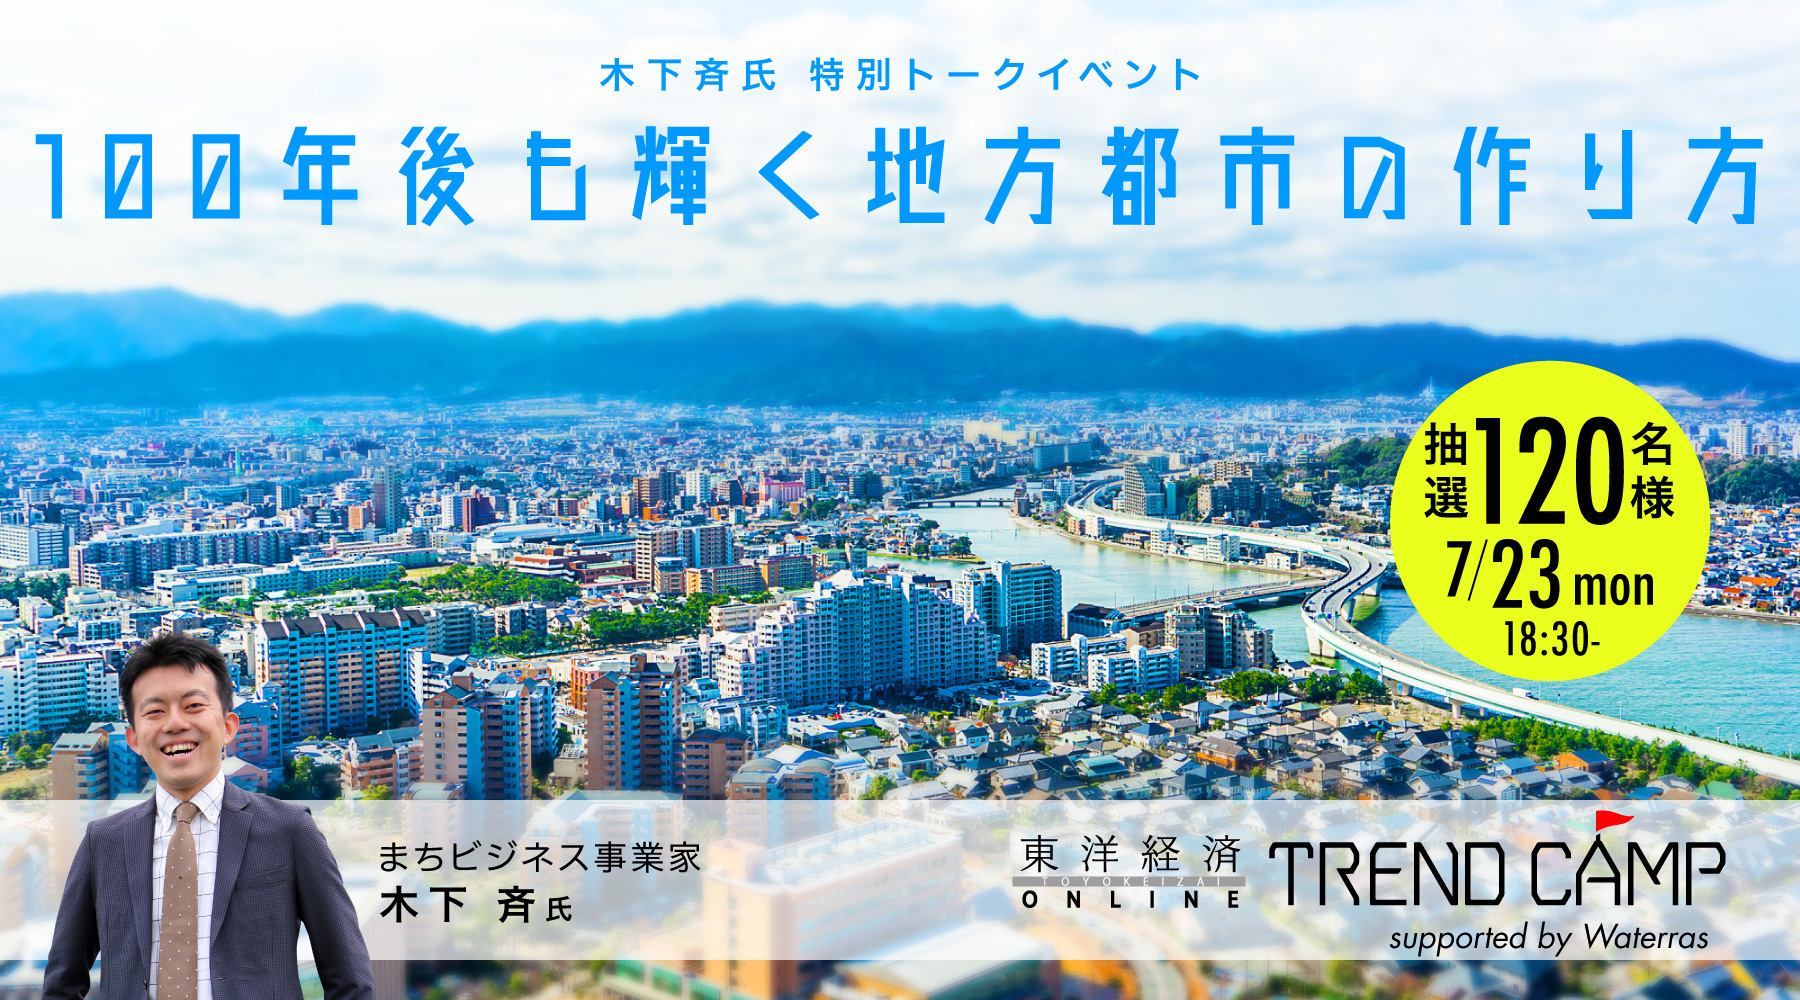 木下斉氏 特別トークイベント『100年後も輝く地方都市の作り方』